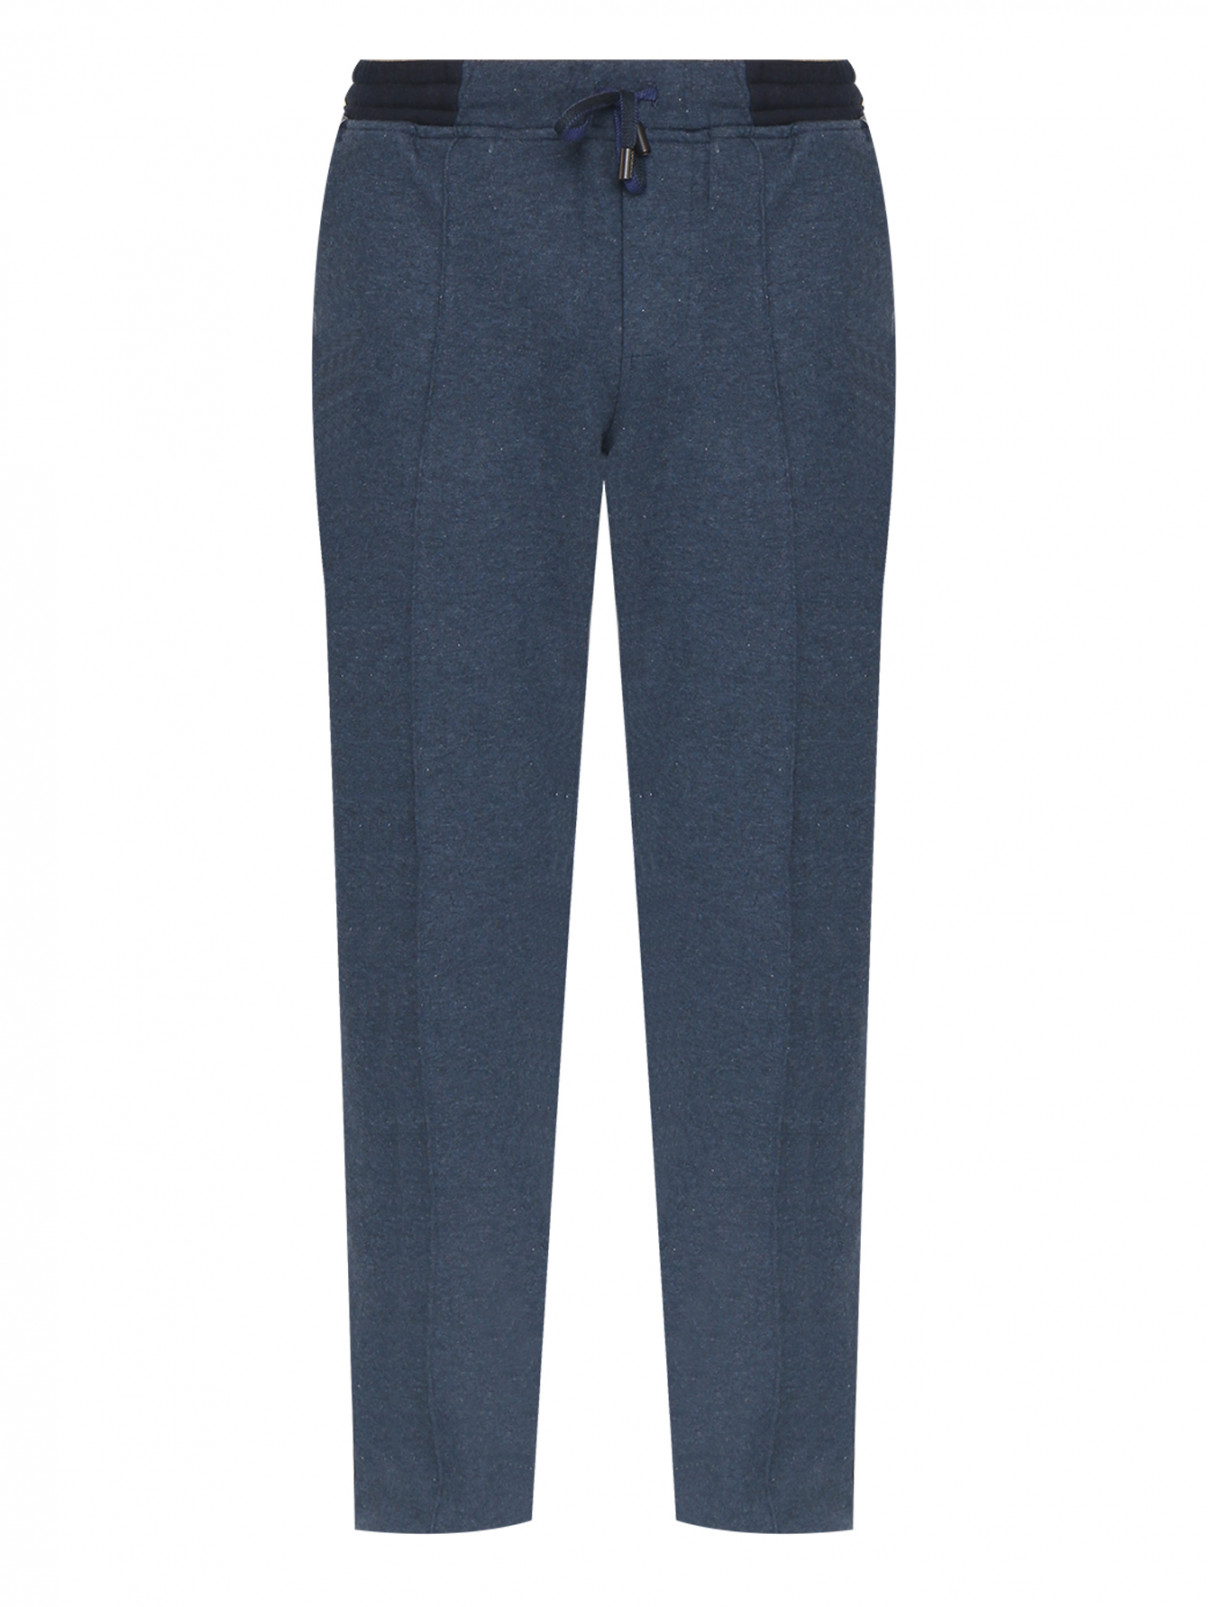 Трикотажные брюки из хлопка Capobianco  –  Общий вид  – Цвет:  Синий